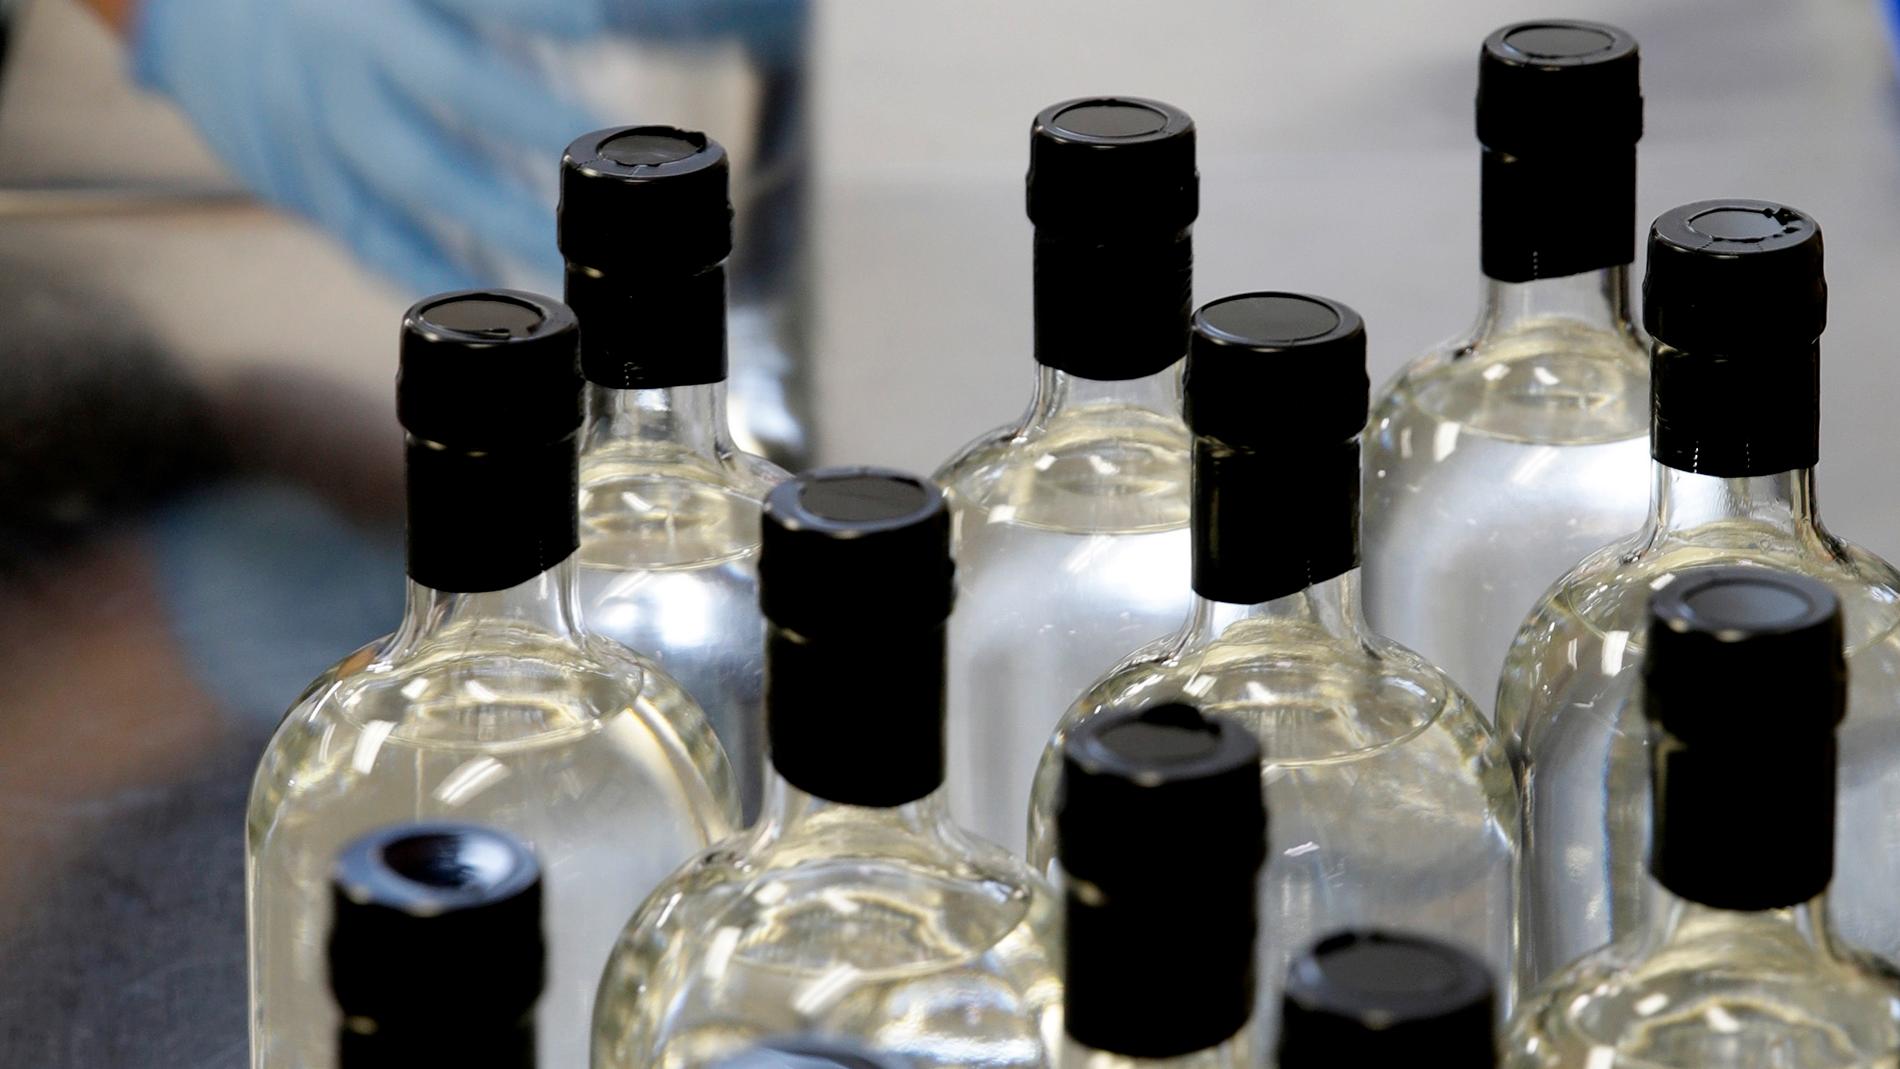 90 000 flaskor vodka misstänktes vara avsedda för den nordkoreanska regimen.